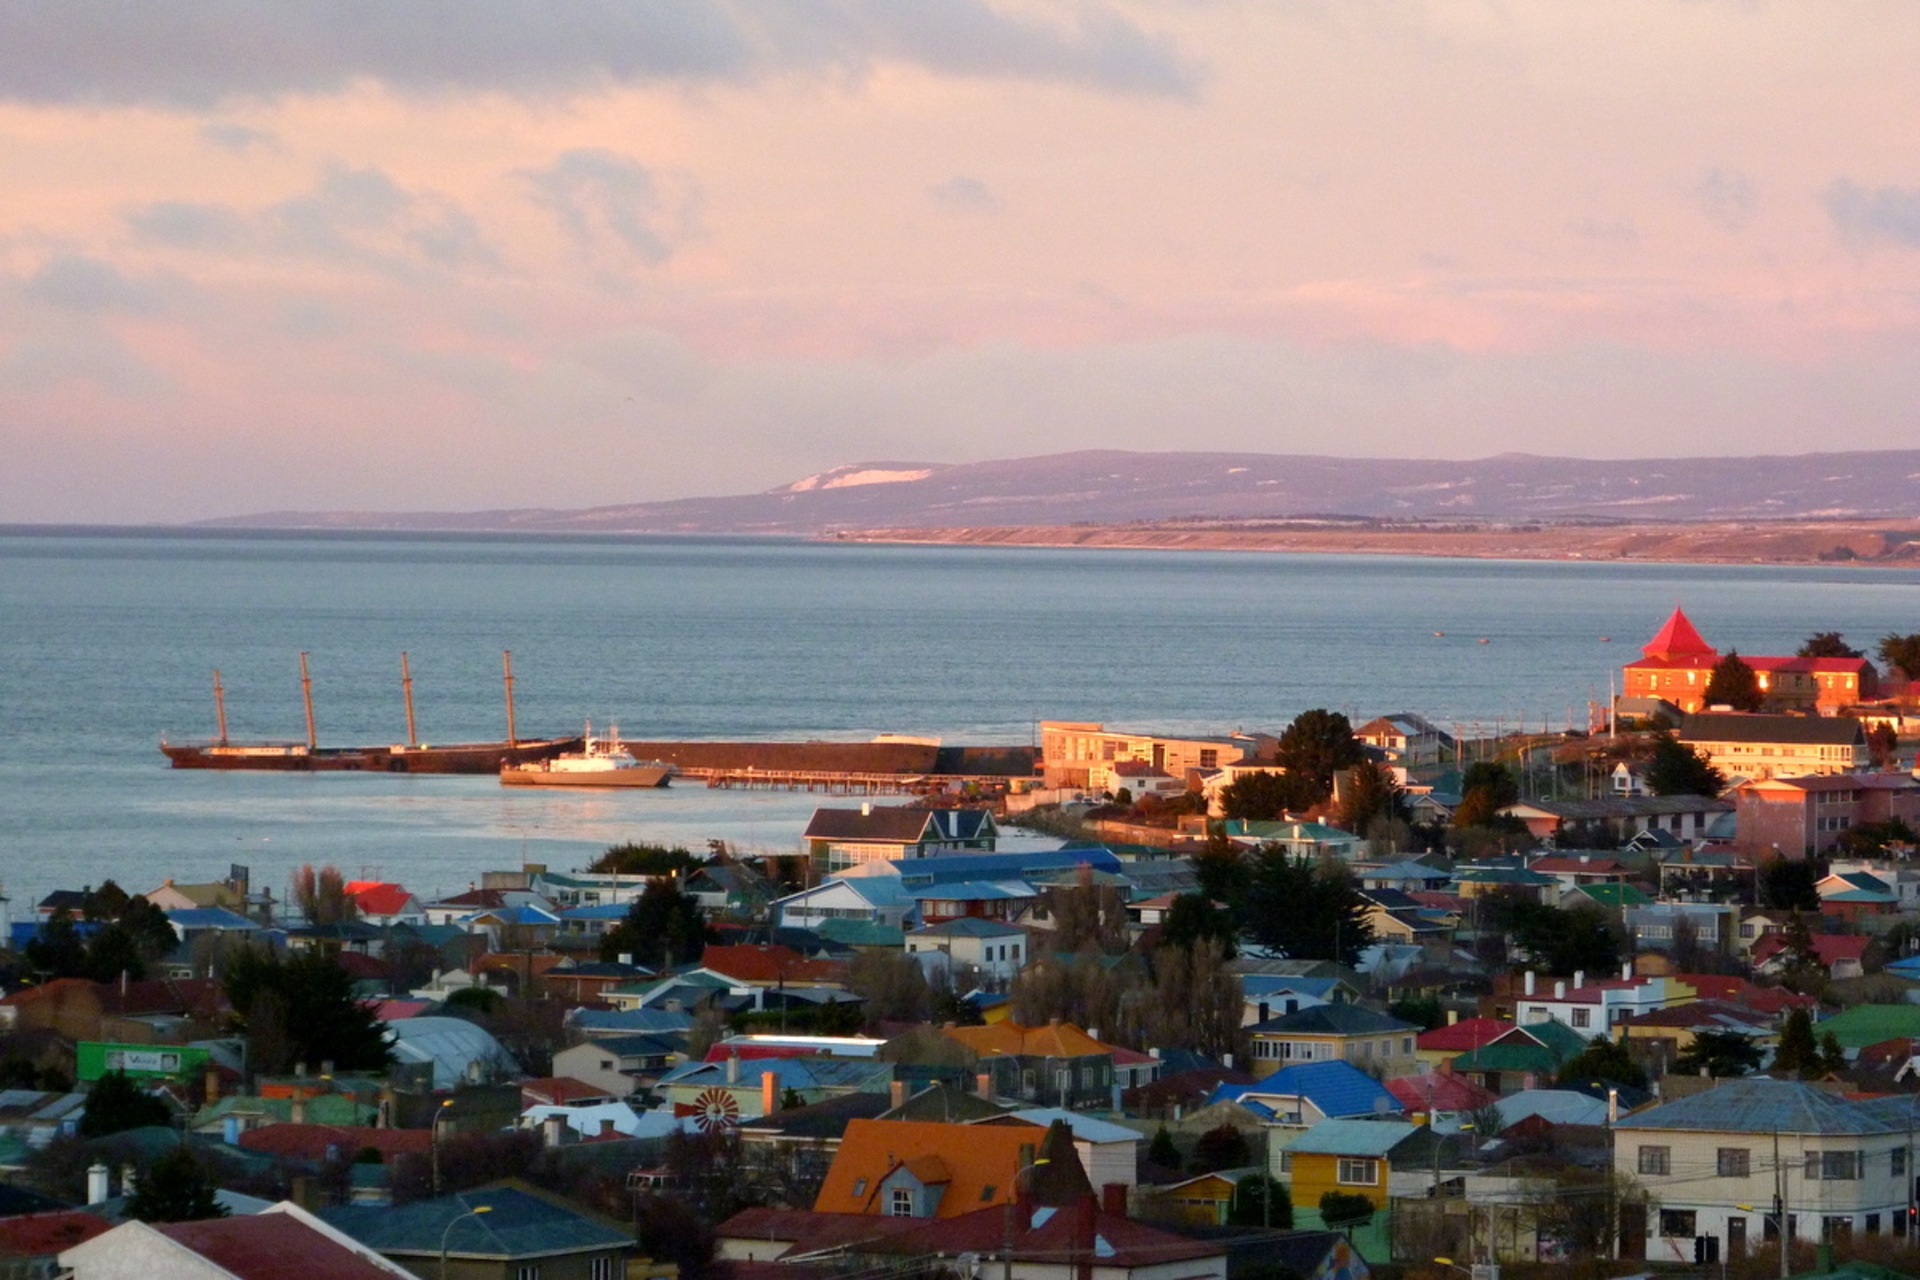 Porsche: Punta Arenas, scelta dalla Porsche per la produzione di eFuel, è una città del Cile meridionale, capitale della Regione di Magellano e dell'Antartide Cilena (chiamata anche Dodicesima Regione) e conta 130.000 abitanti circa